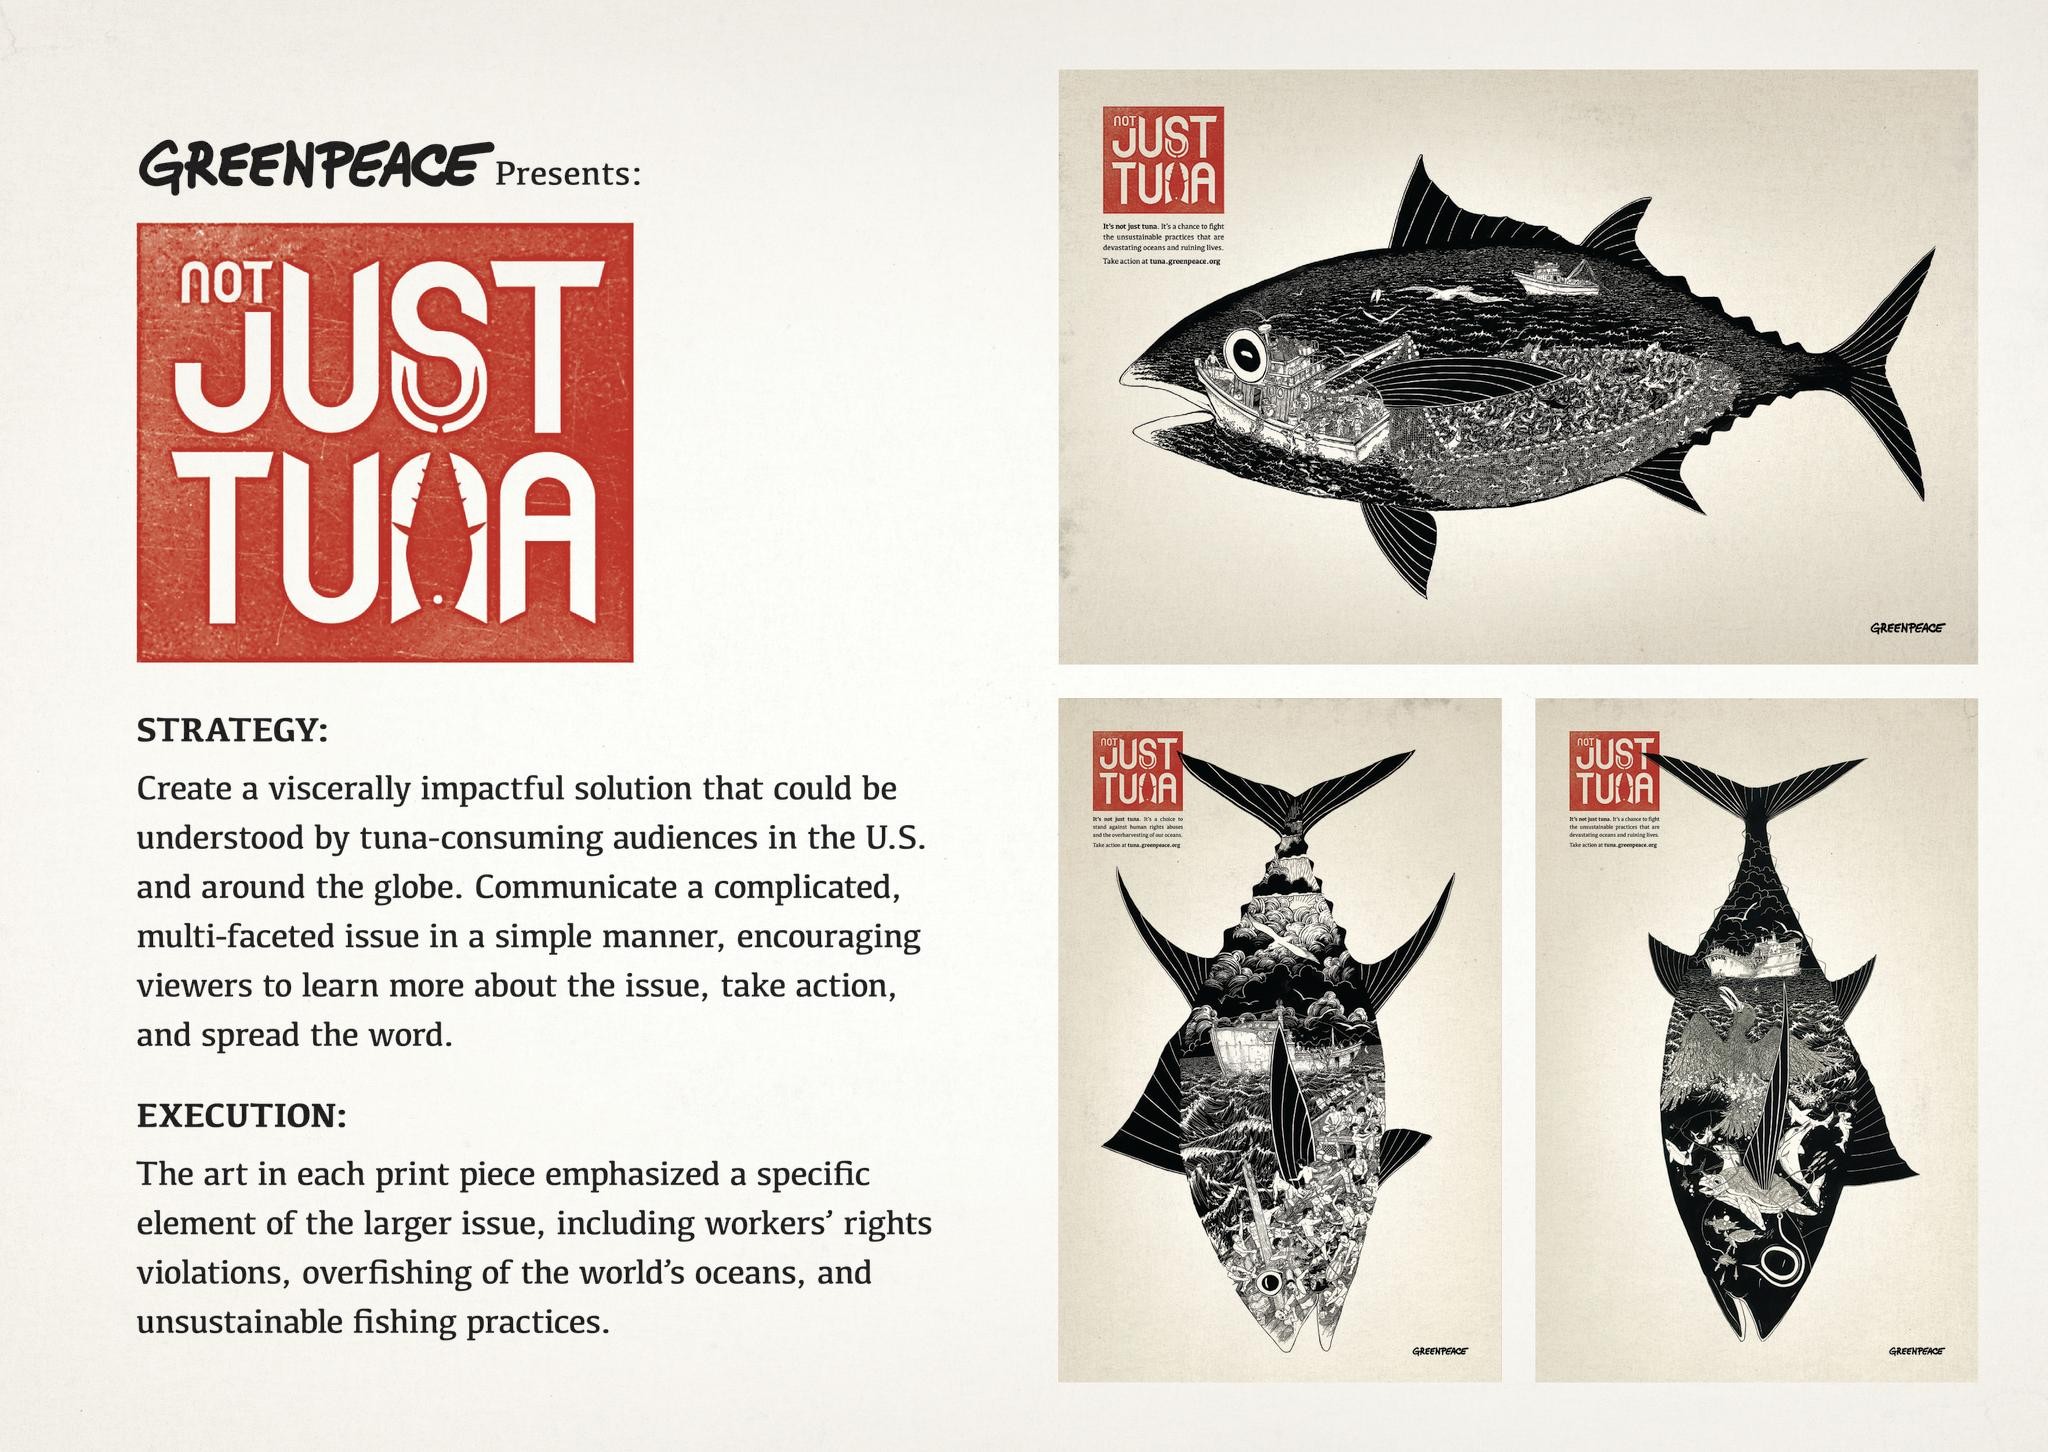 Greenpeace Presents: Not Just Tuna